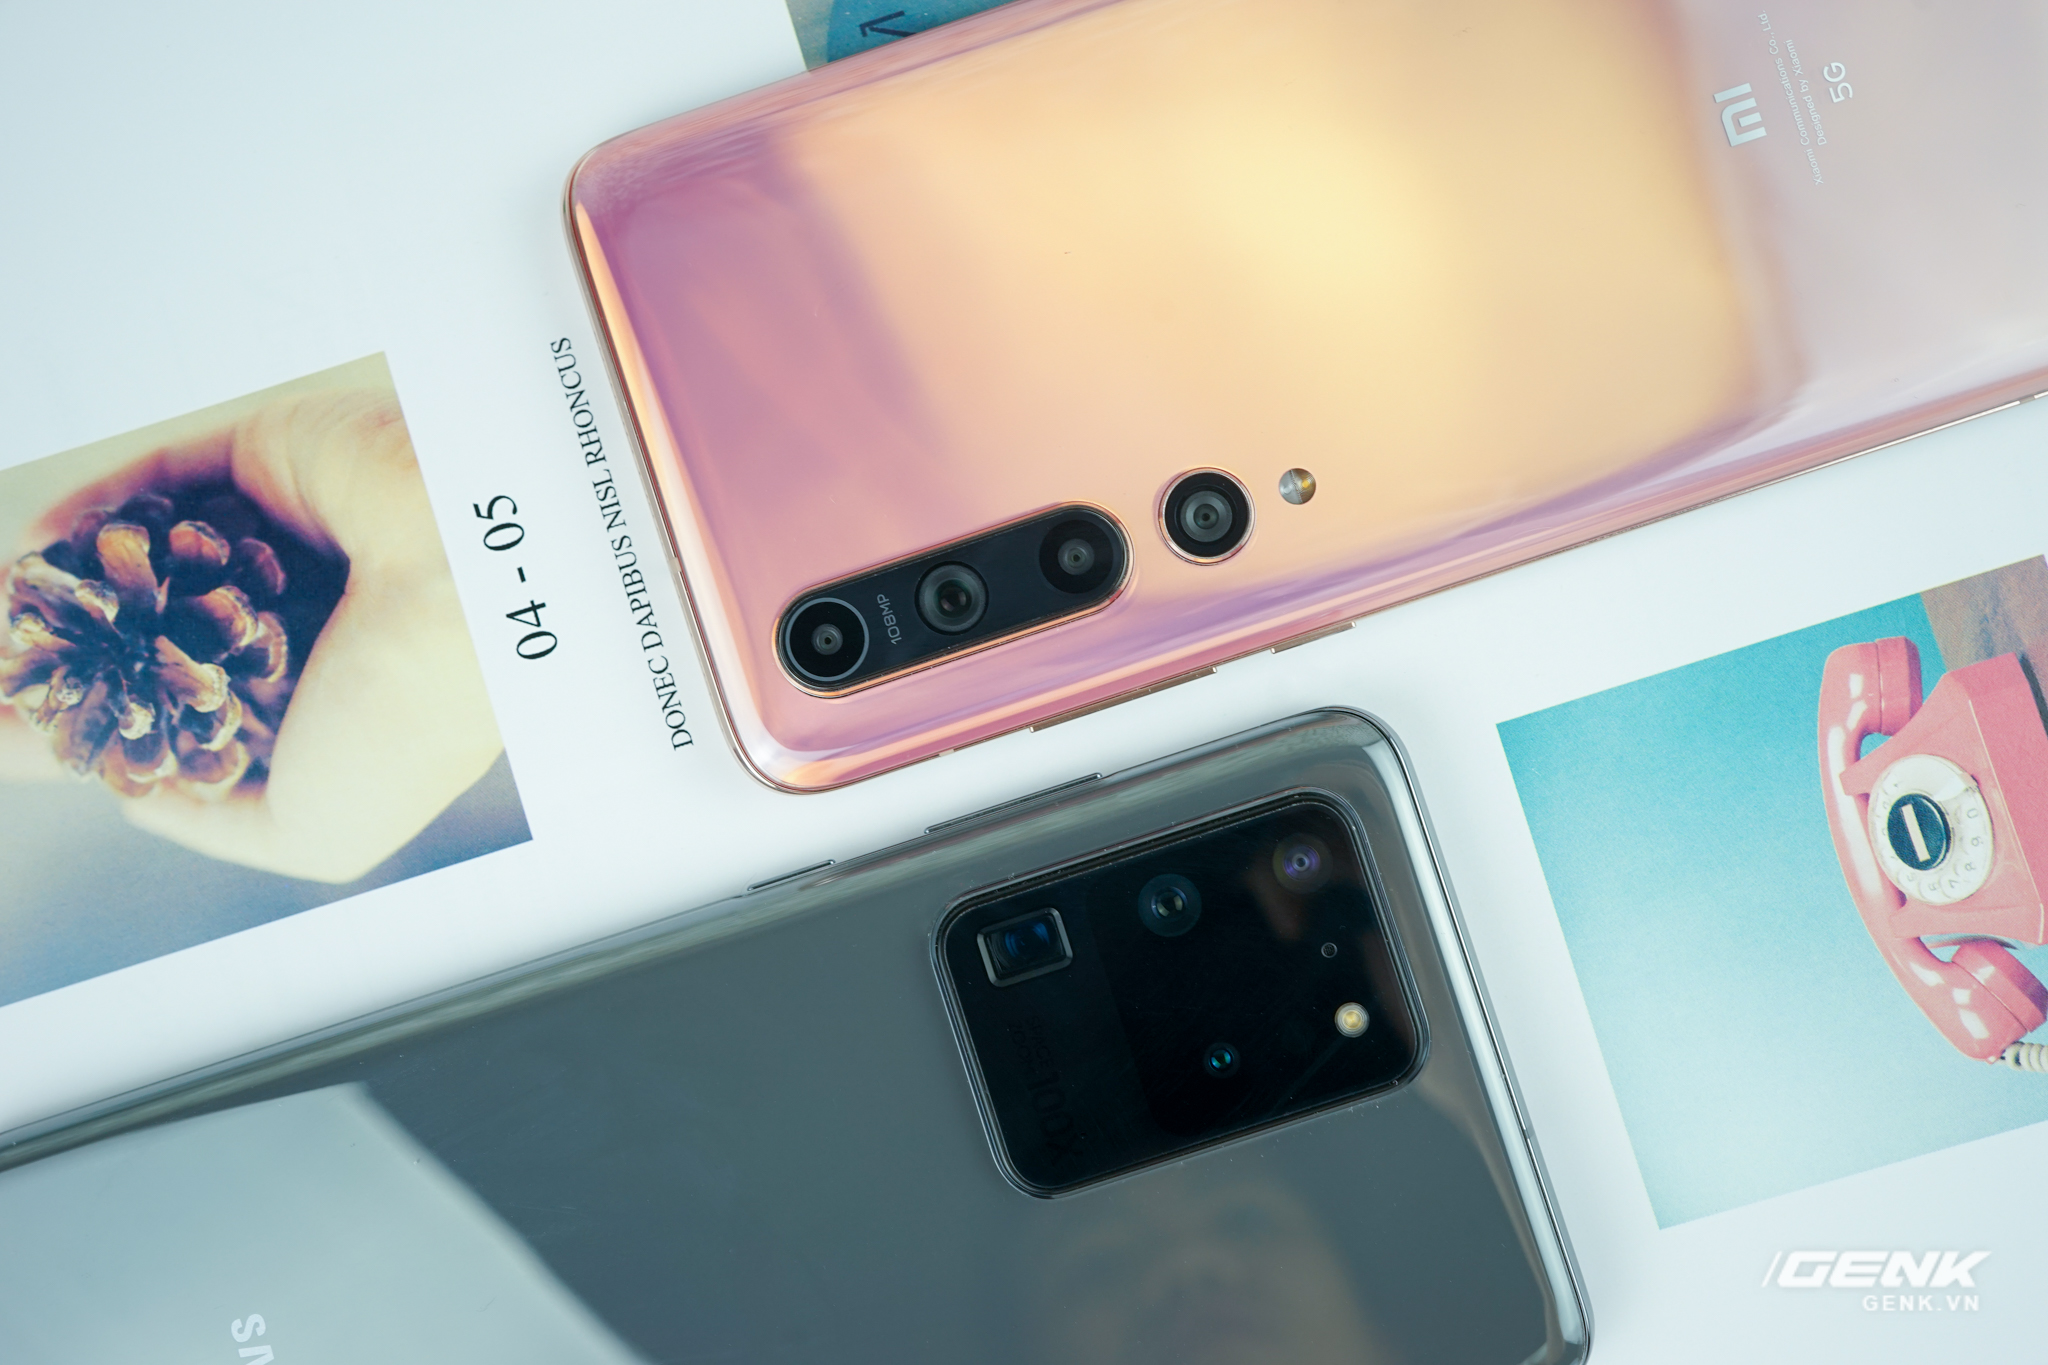 So sánh 2 chiếc điện thoại nổi tiếng nhất hiện nay, Xiaomi Mi 10 và Samsung Galaxy S20 Ultra, để tìm ra chiếc điện thoại nào có camera tốt hơn. Bài viết này sẽ giúp bạn hiểu biết rõ hơn về ưu và nhược điểm của 2 loại điện thoại này để có thể đưa ra quyết định thông minh.